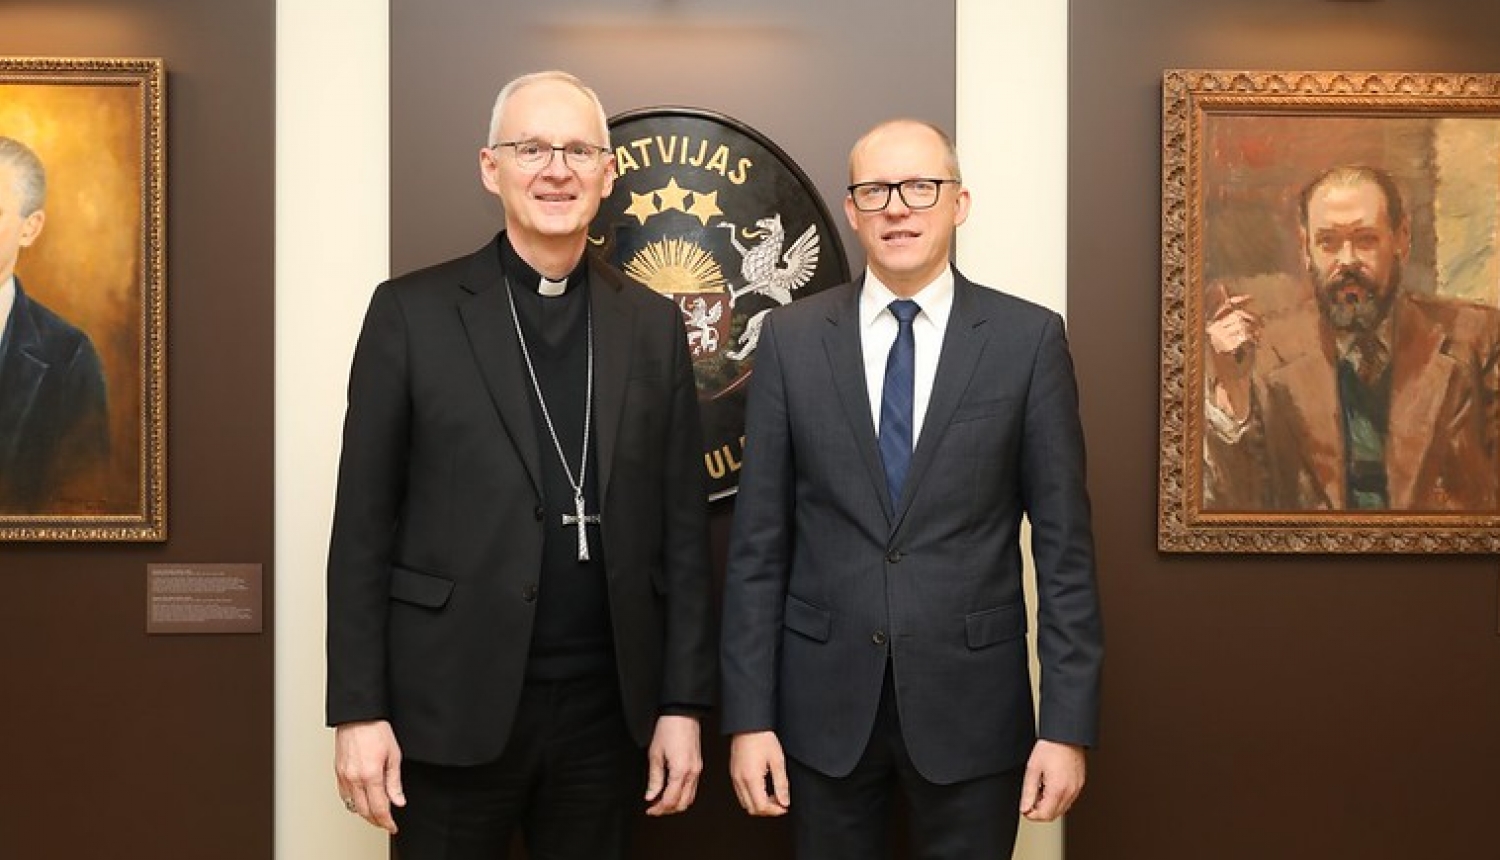 Ārlietu ministrijas valsts sekretārs Andris Pelšs tiekas ar Svētā Krēsla apustulisko nunciju Latvijā arhibīskapu Petaru Rajiču (Petar Rajić)